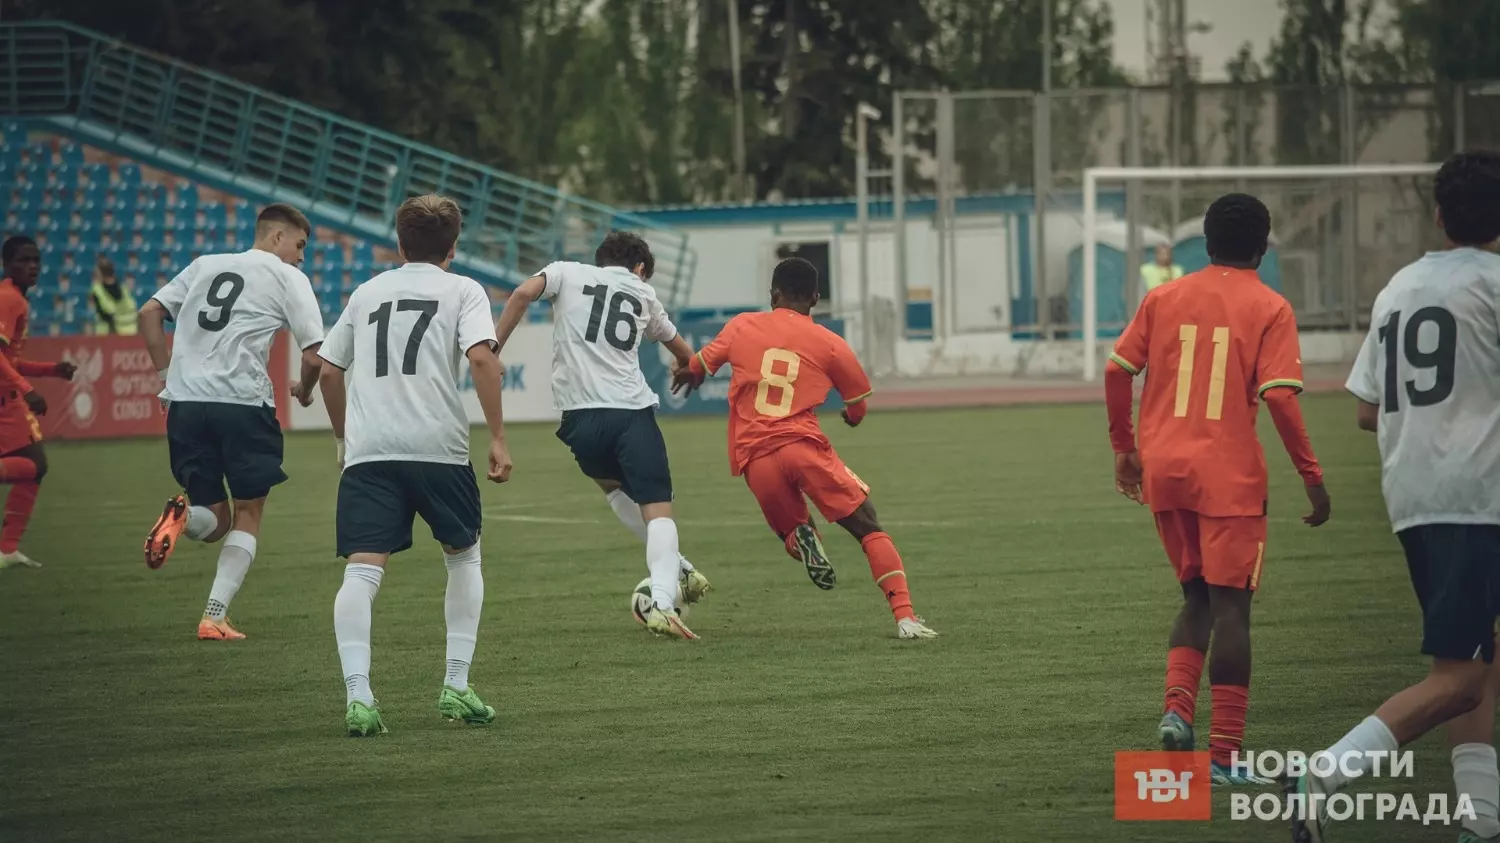 Сборная России выиграла в первом же матче на турнире развития УЕФА